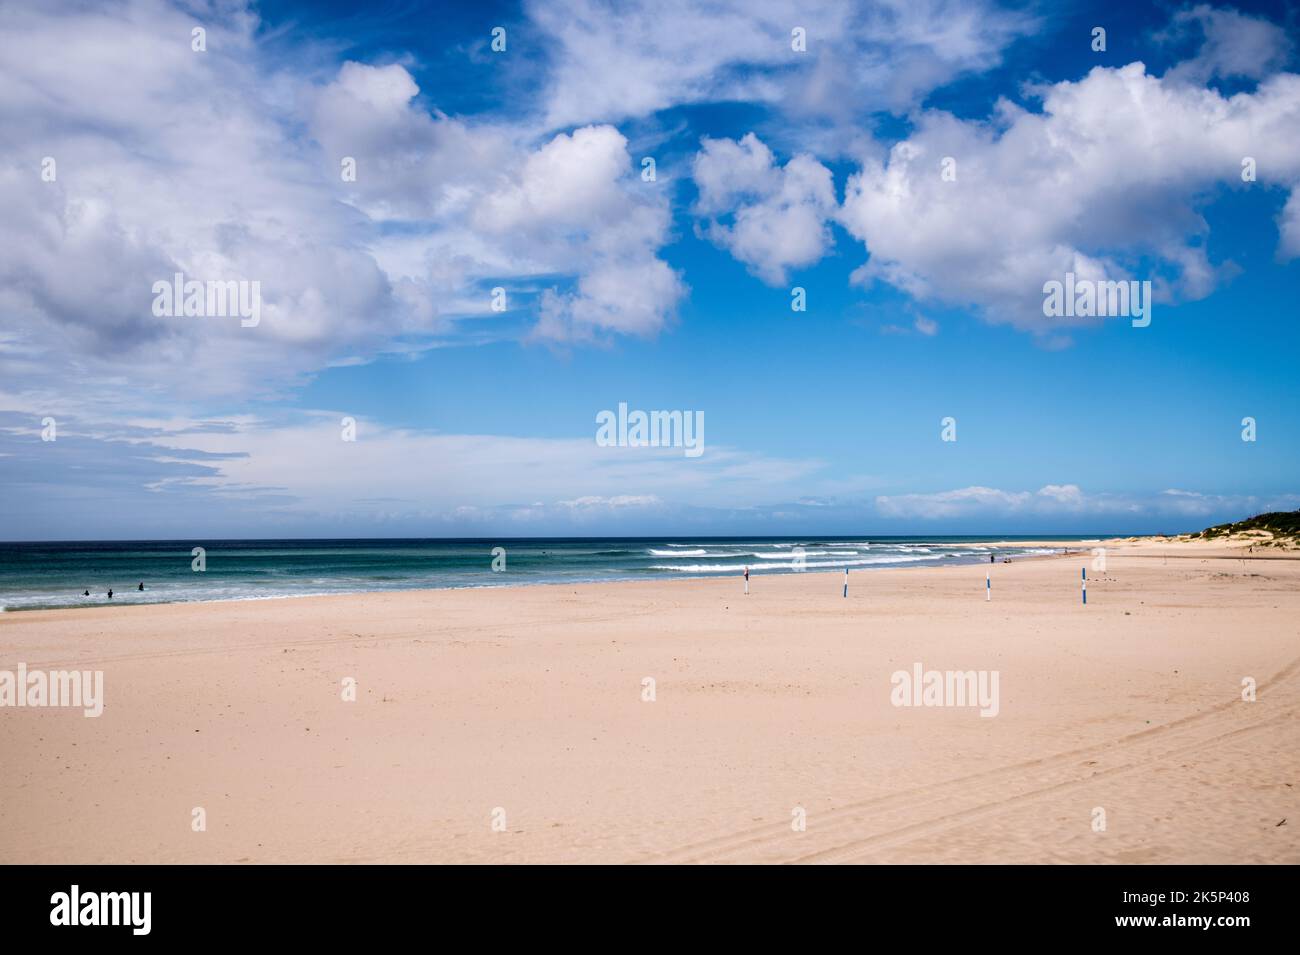 Ein herrlicher sonniger Strandtag für ein Picknick und ein Barbecue im Komfort von weichem Strandsand und einer launischen Wolkenformation. Ideal zum Sonnenbaden Stockfoto